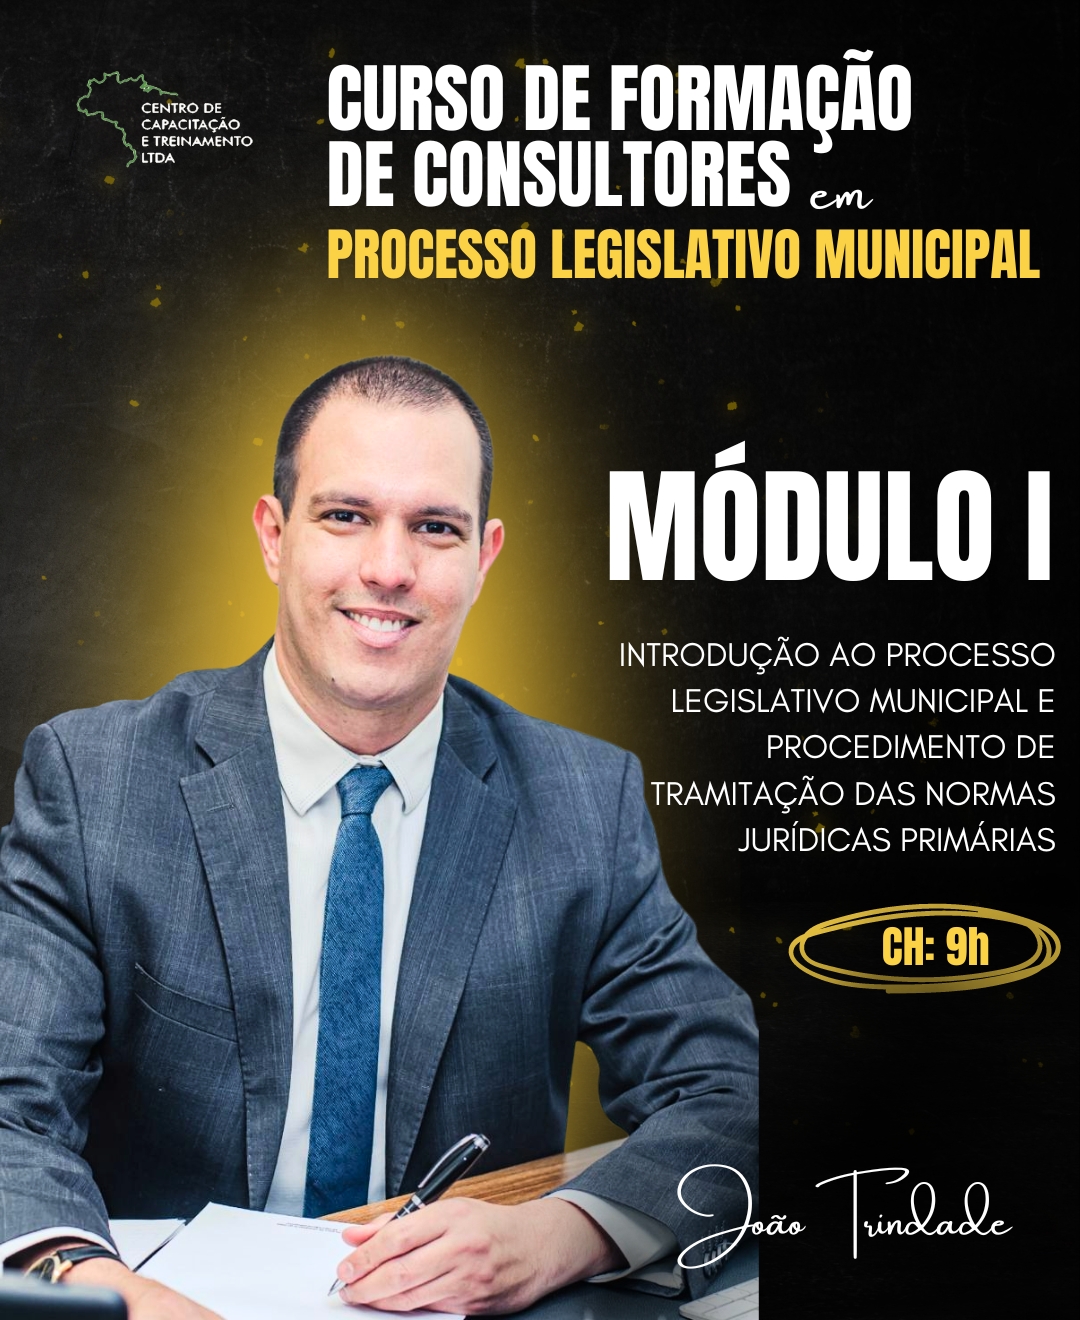 MÓDULO I -  Introdução ao Processo Legislativo Municipal e Procedimento de Tramitação das Normas Jurídicas Primárias